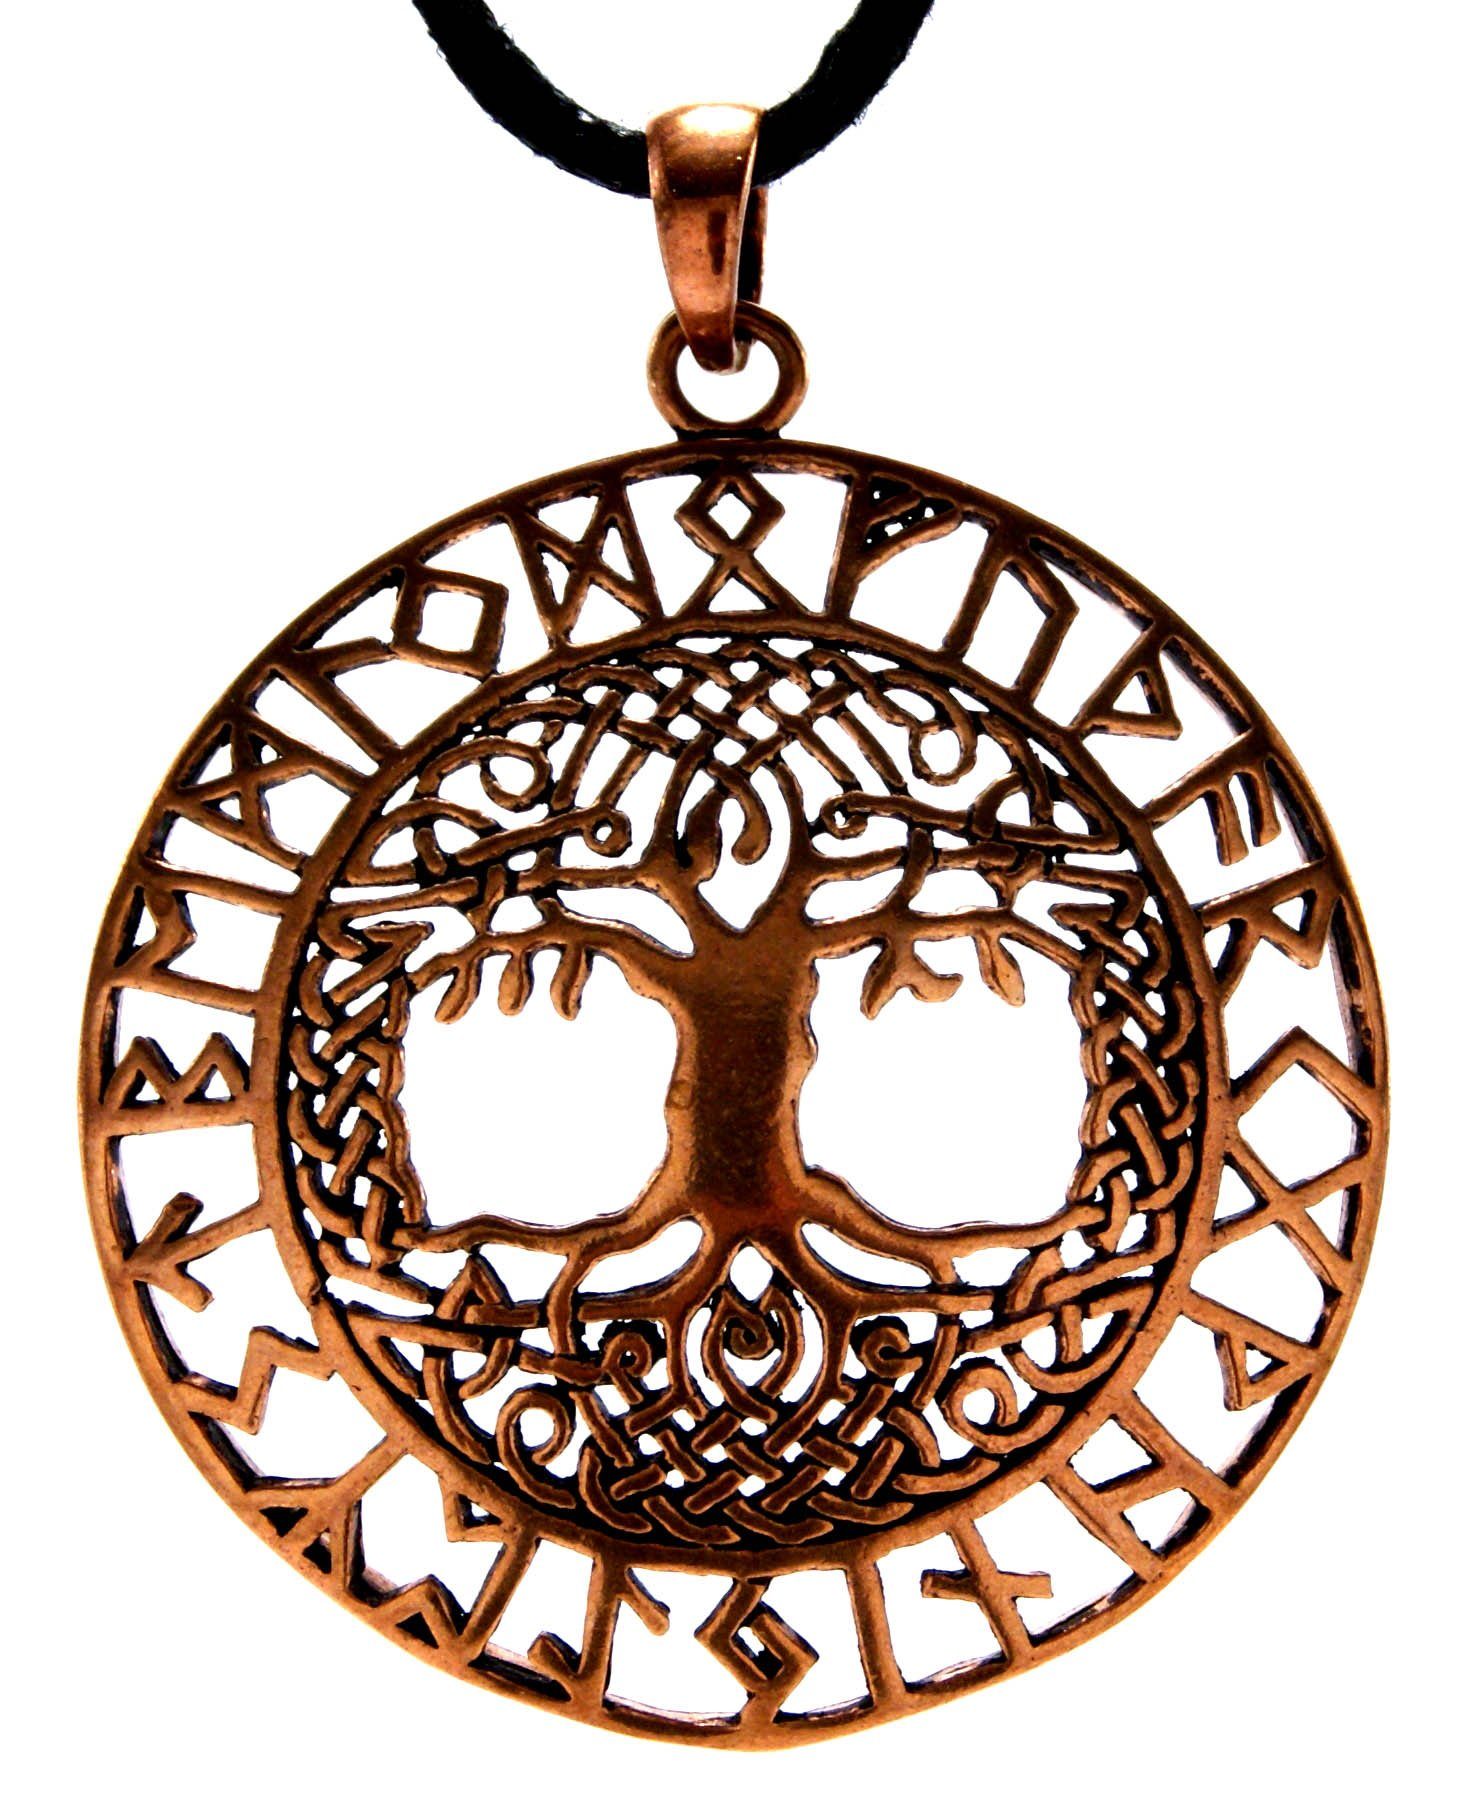 des Lebensbaum Baum Leather Rune Weltenbaum Kiss Runen of Kettenanhänger Lebens Bronze Anhänger Yggdrasil